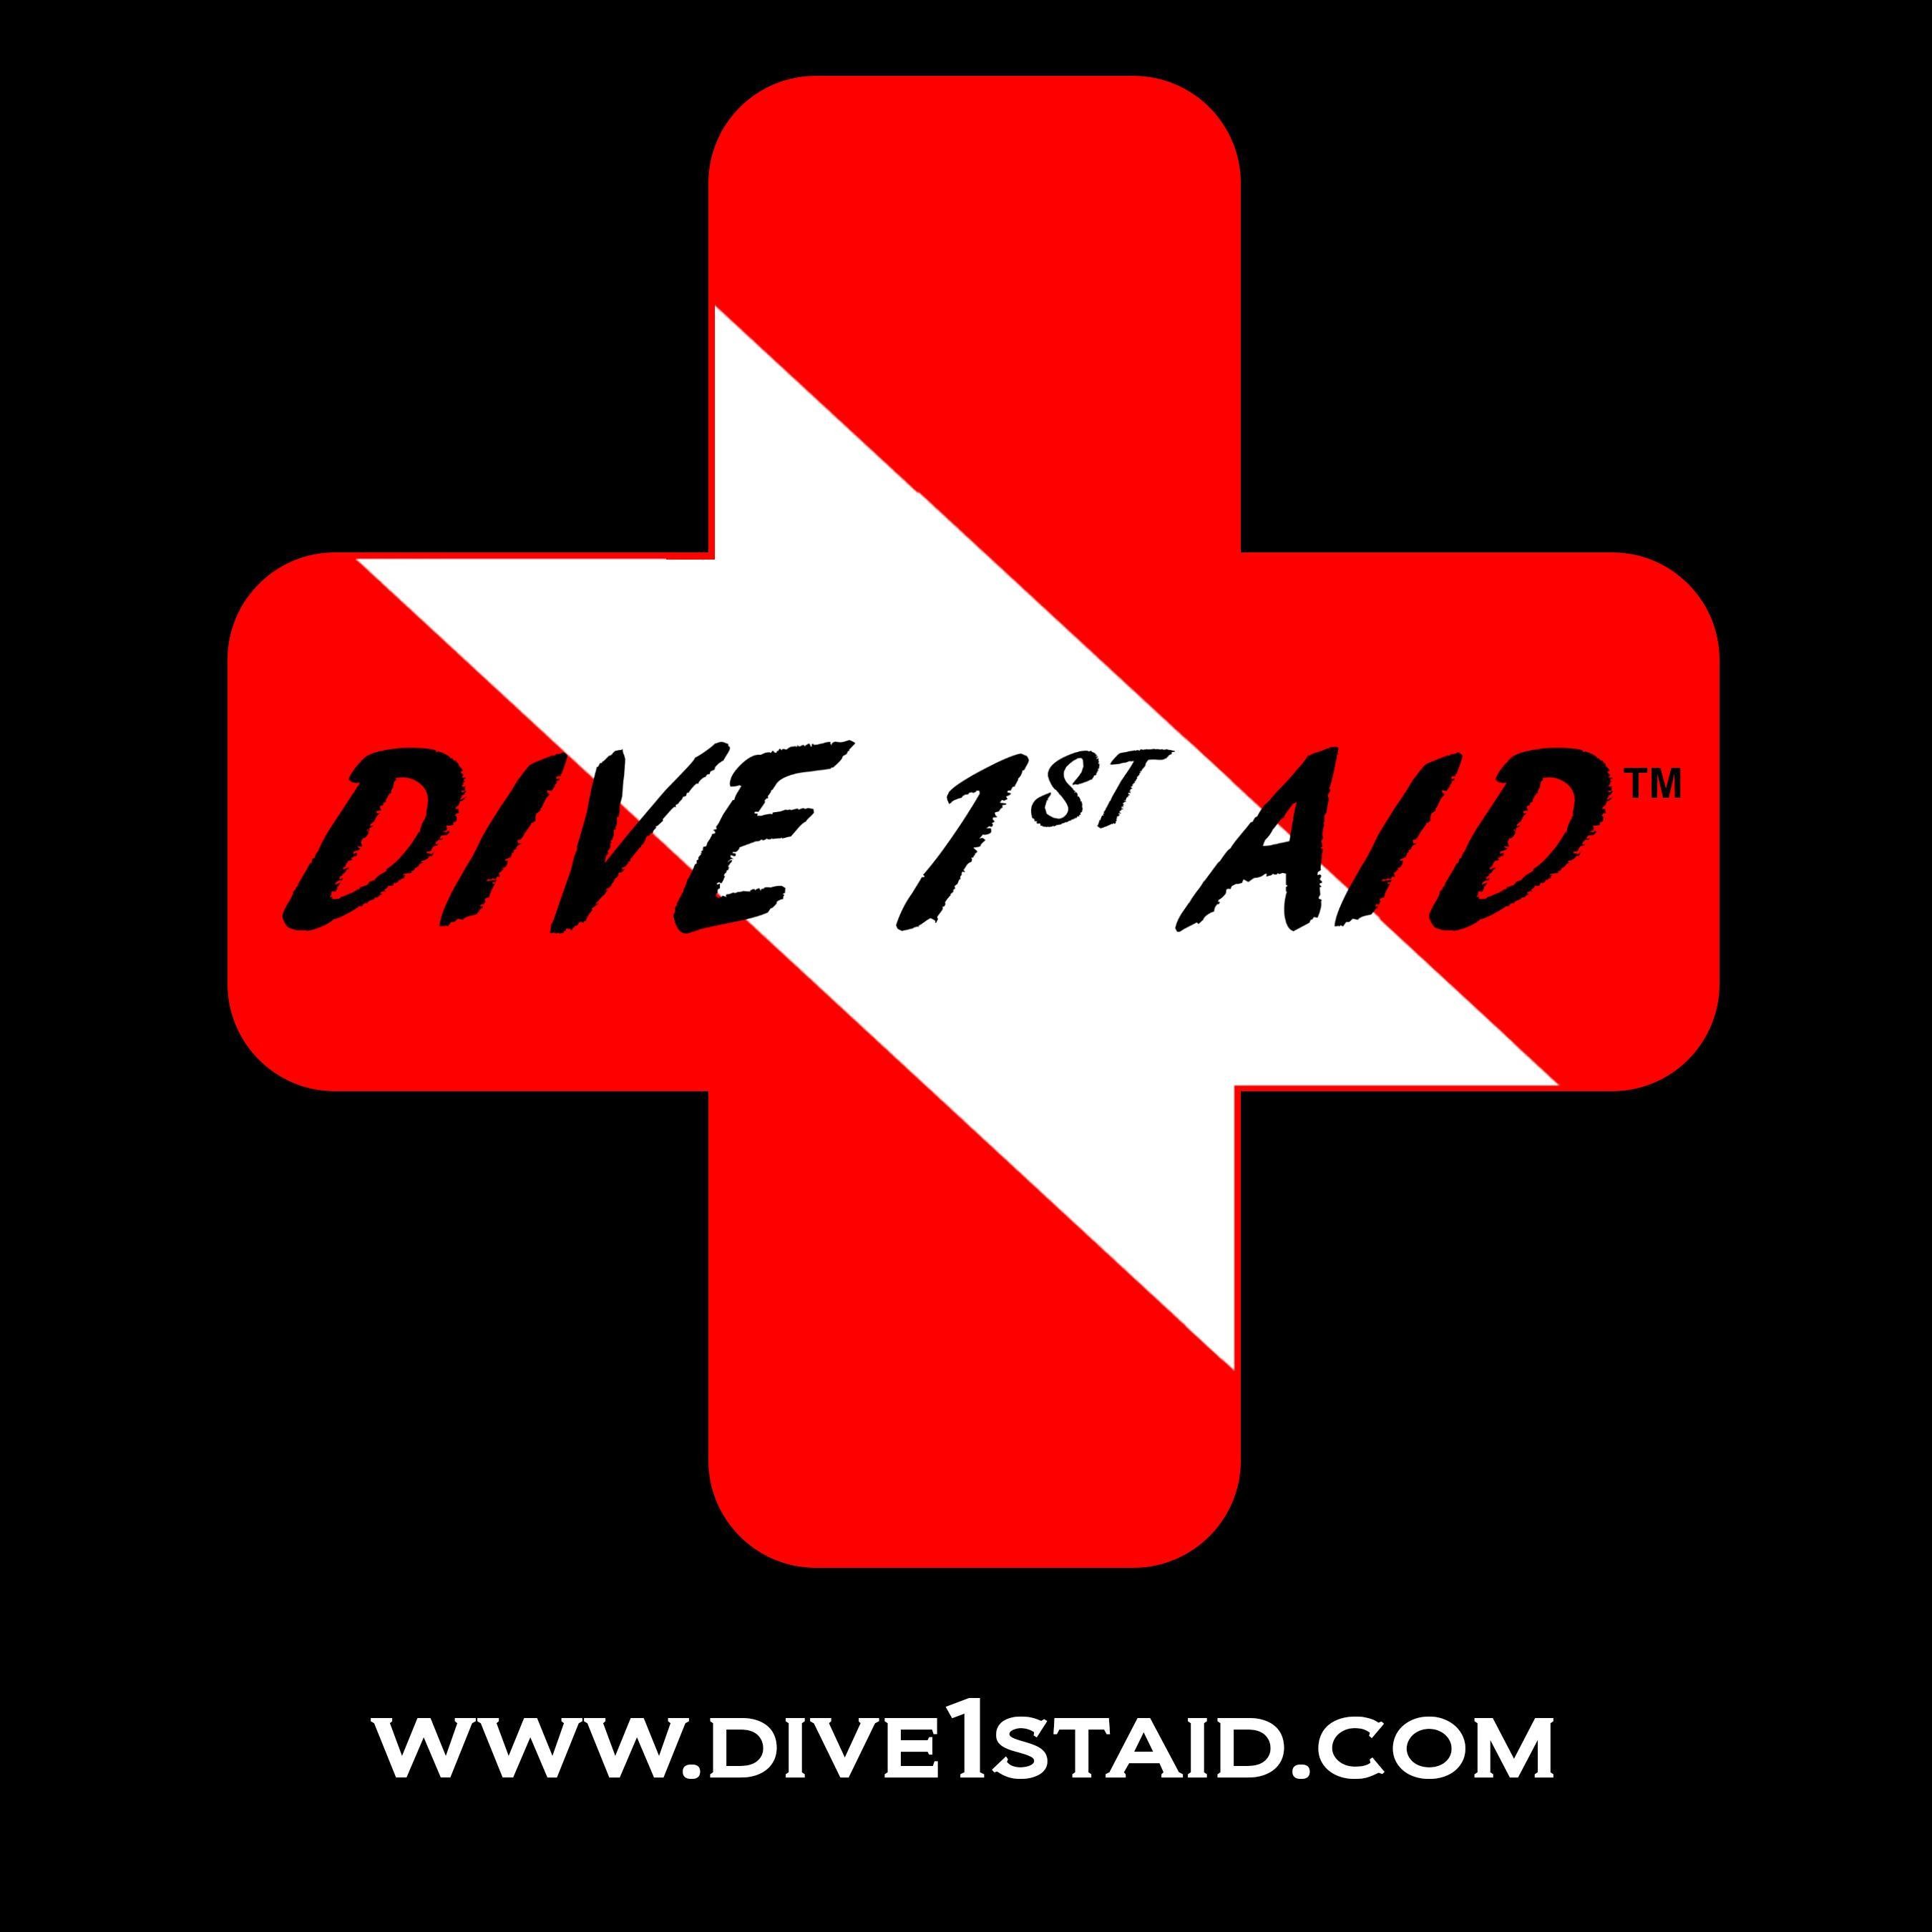 Dive 1st Aid